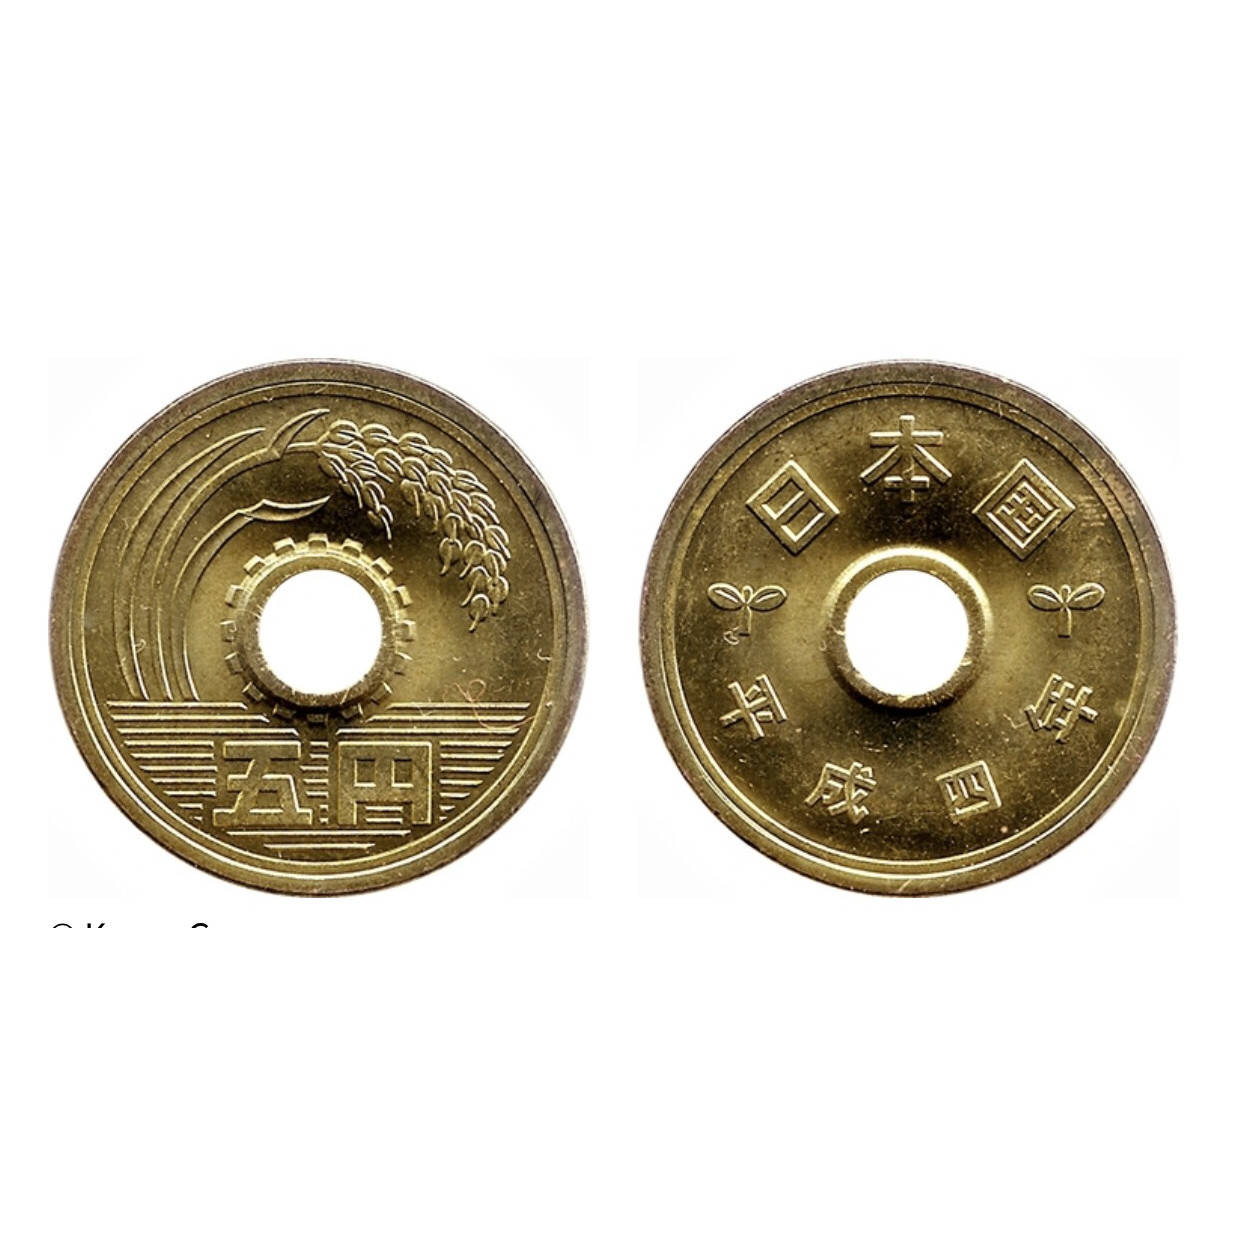 Đồng xu 5 Yên Nhật phong thủy, 1 trong những đồng xu may mắn nhất thế giới